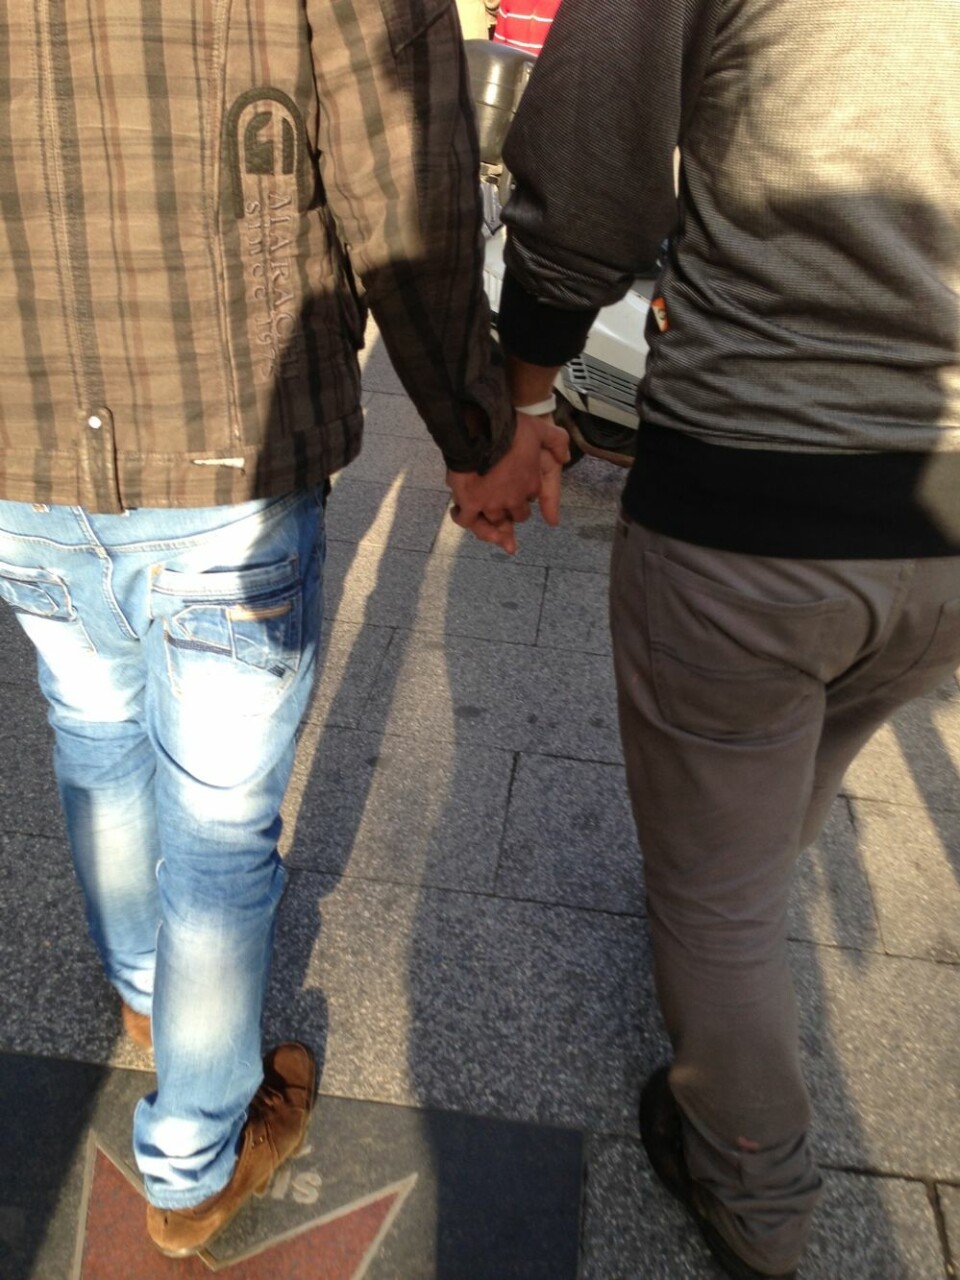 Homofile i Beirut livredde for at deres homoseksualitet skal bli oppdaget. Da vet de at de kan miste jobben eller bli utsatt for æresdrap. (Foto: Erica Li Lundqvist)